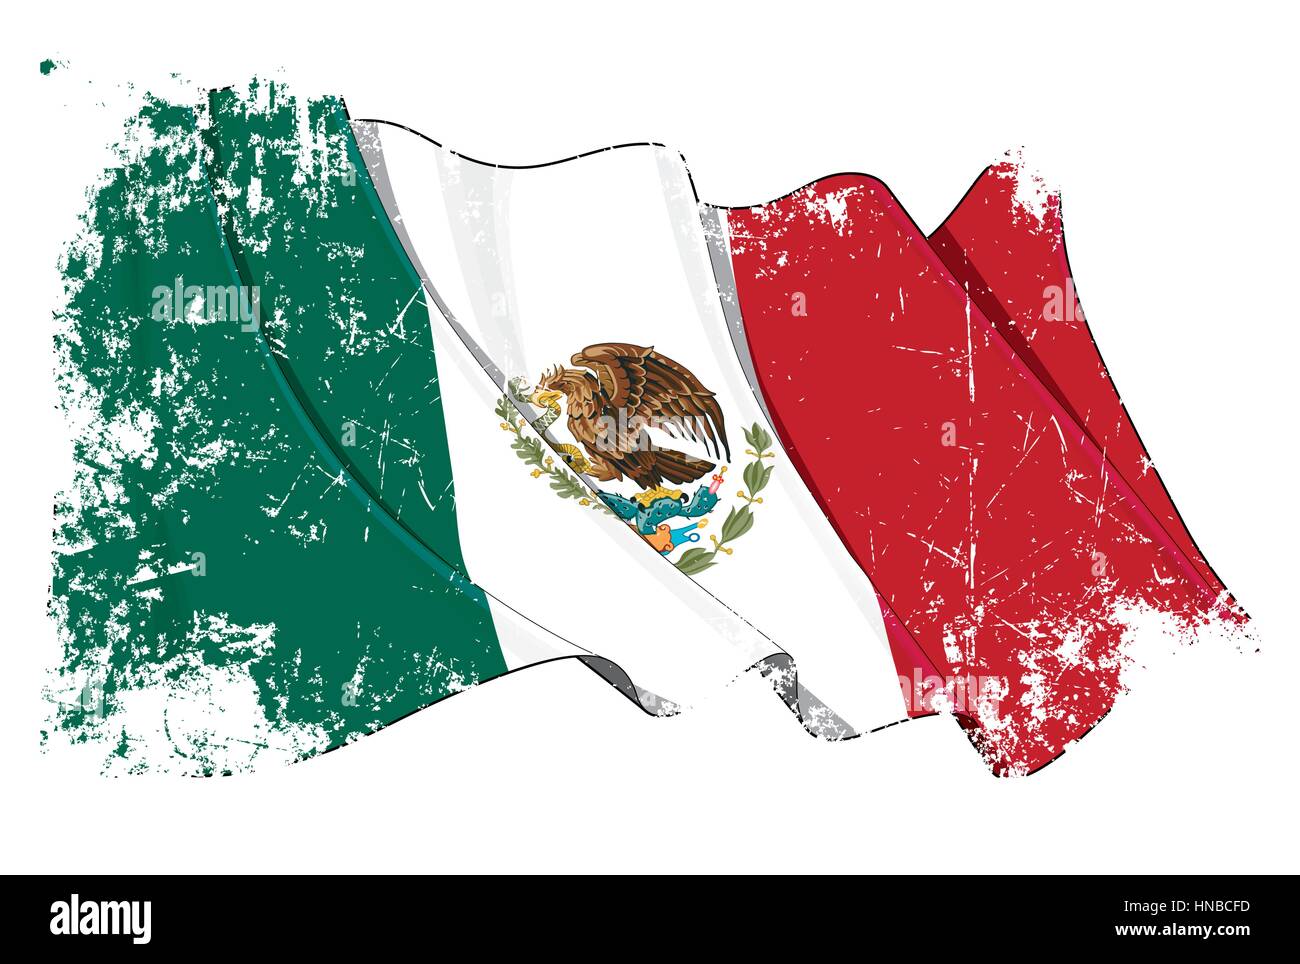 Grunge-Vektor-Illustration einer winkenden mexikanischen Flagge. Alle Elemente übersichtlich organisiert. Textur, Linien, Schattierungen & Flagge Farben auf trennen lagen für leicht Stock Vektor